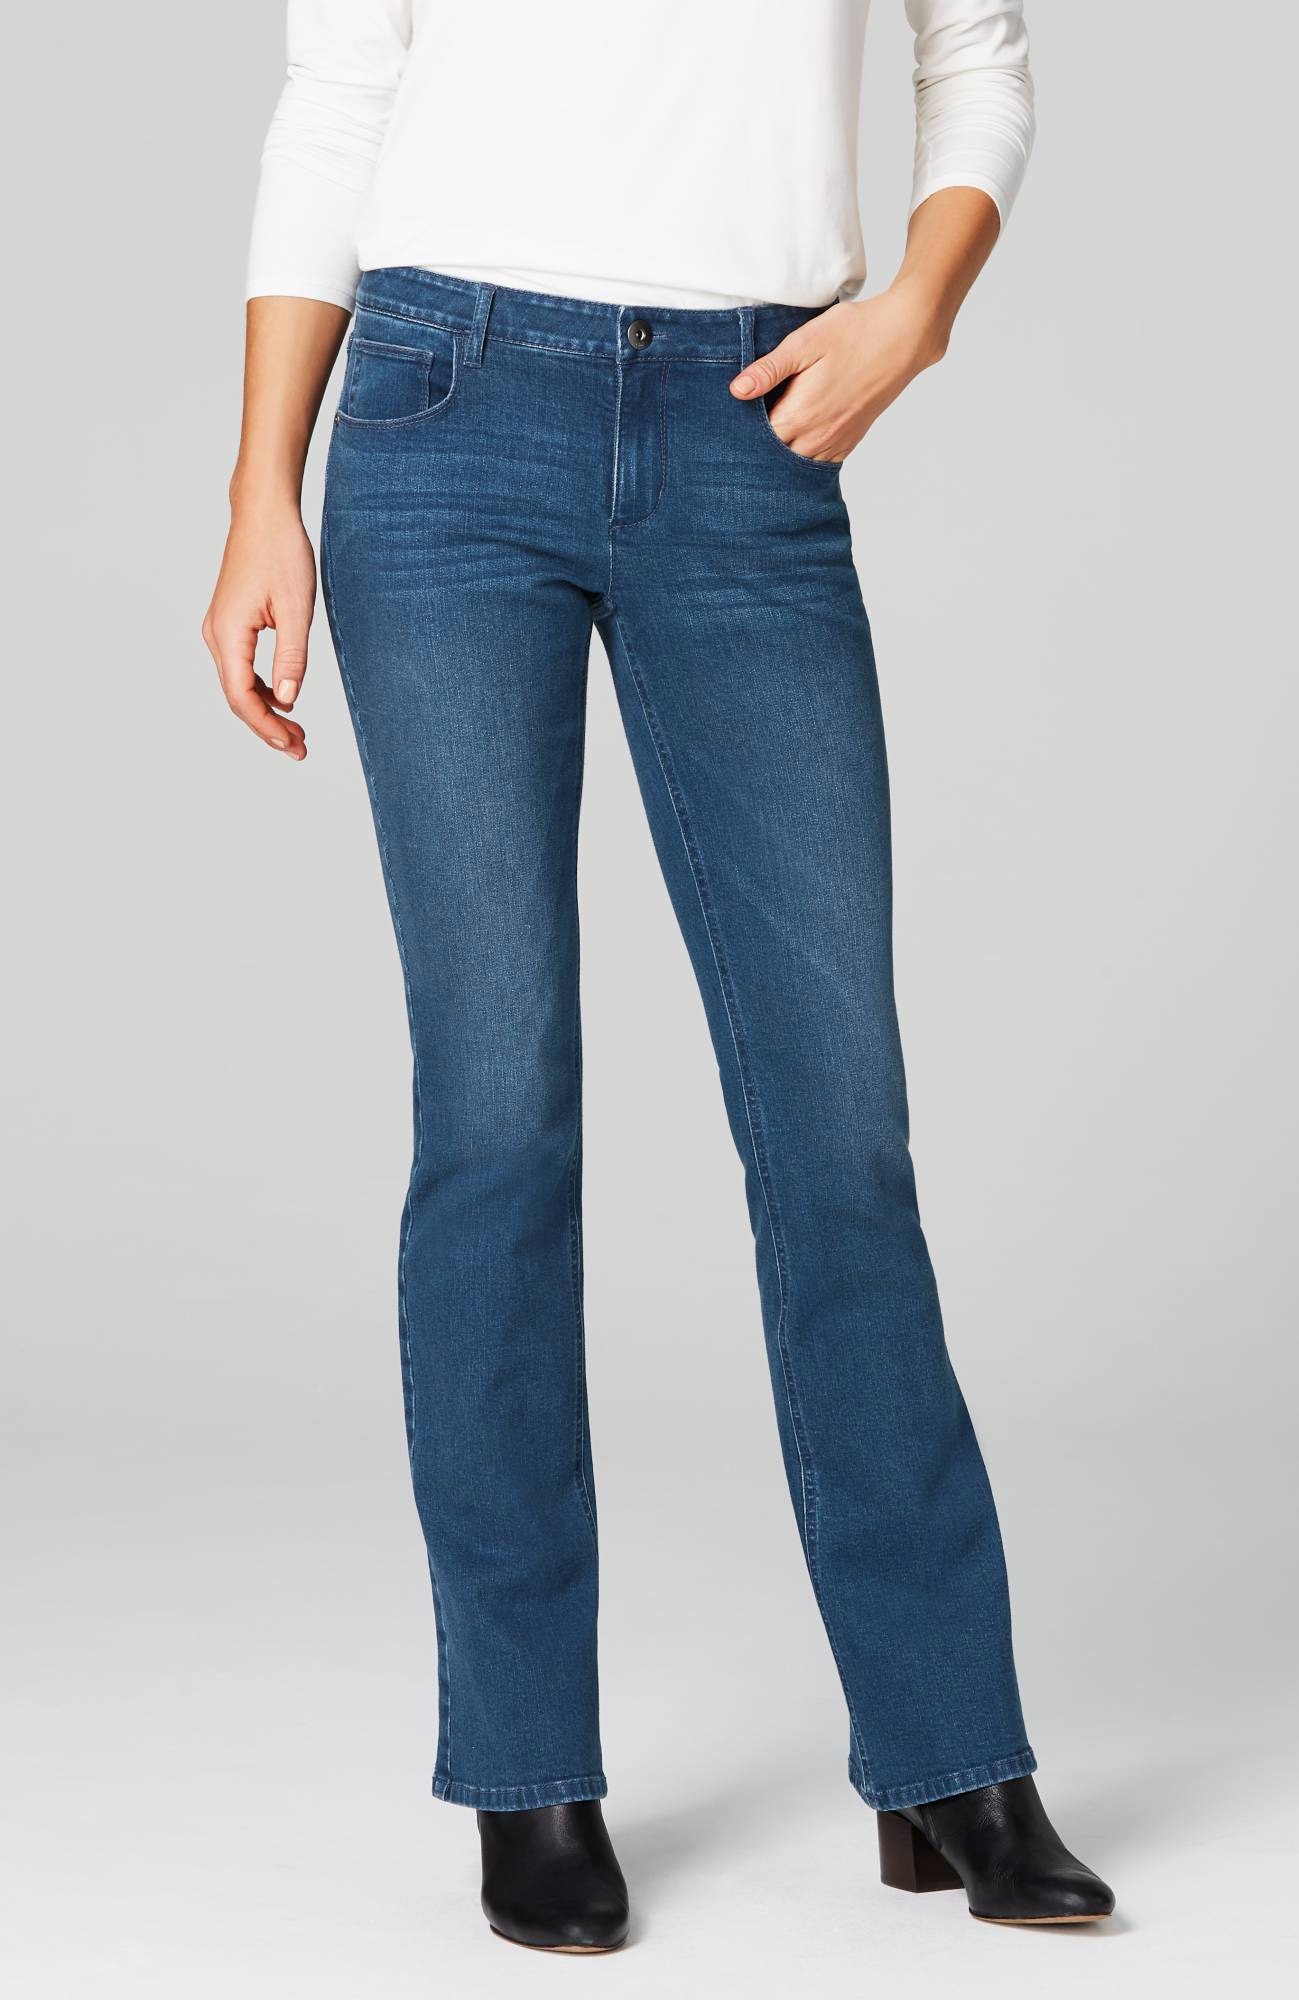 debenhams high waisted jeans